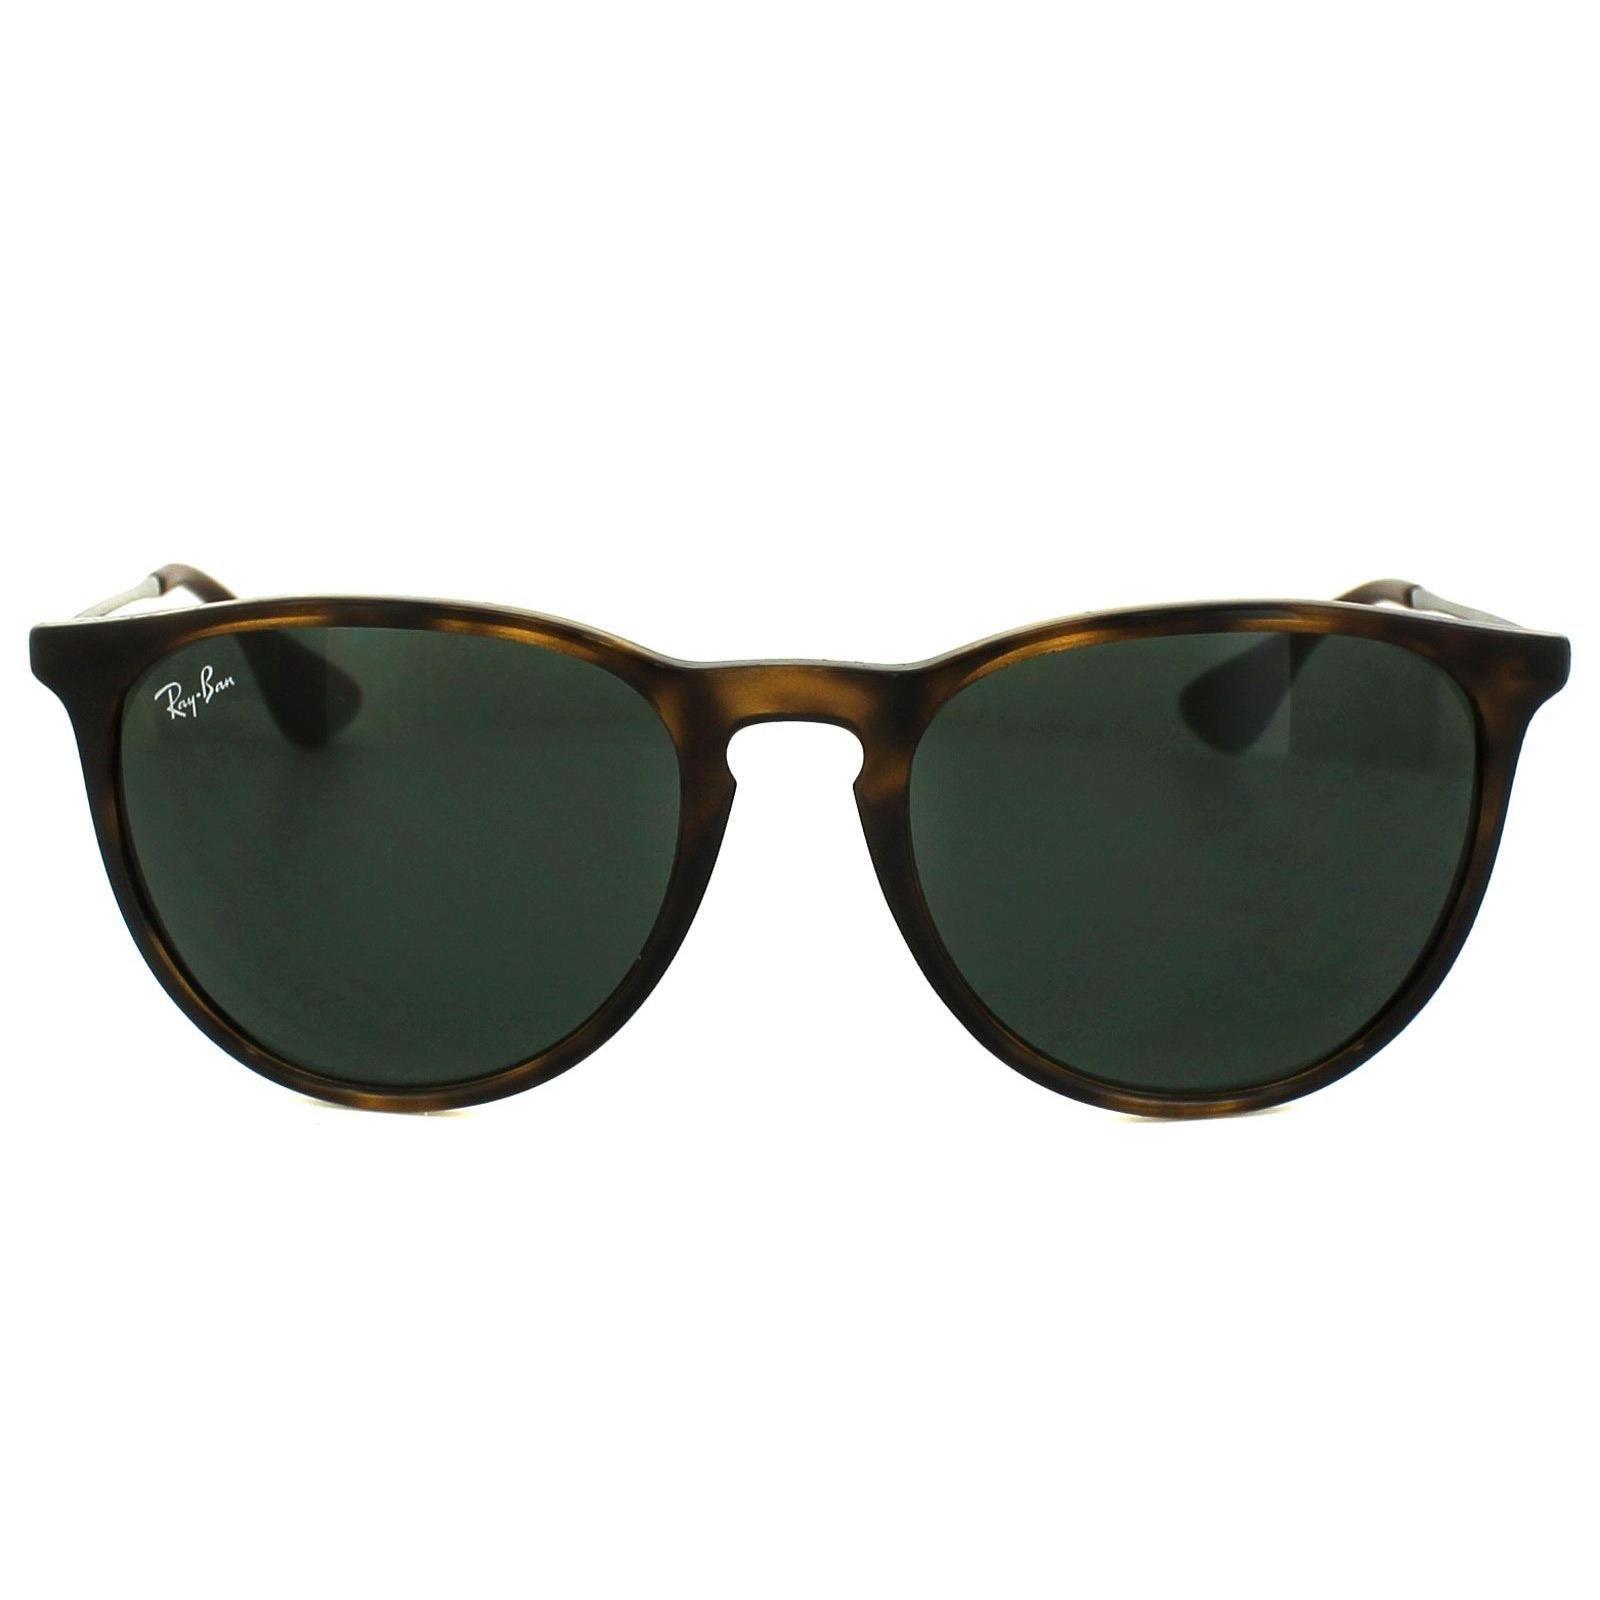 Круглые черепаховые и темно-зеленые солнцезащитные очки Erika 4171 Ray-Ban, коричневый солнцезащитные очки квадратные оправа пластик черепаховый